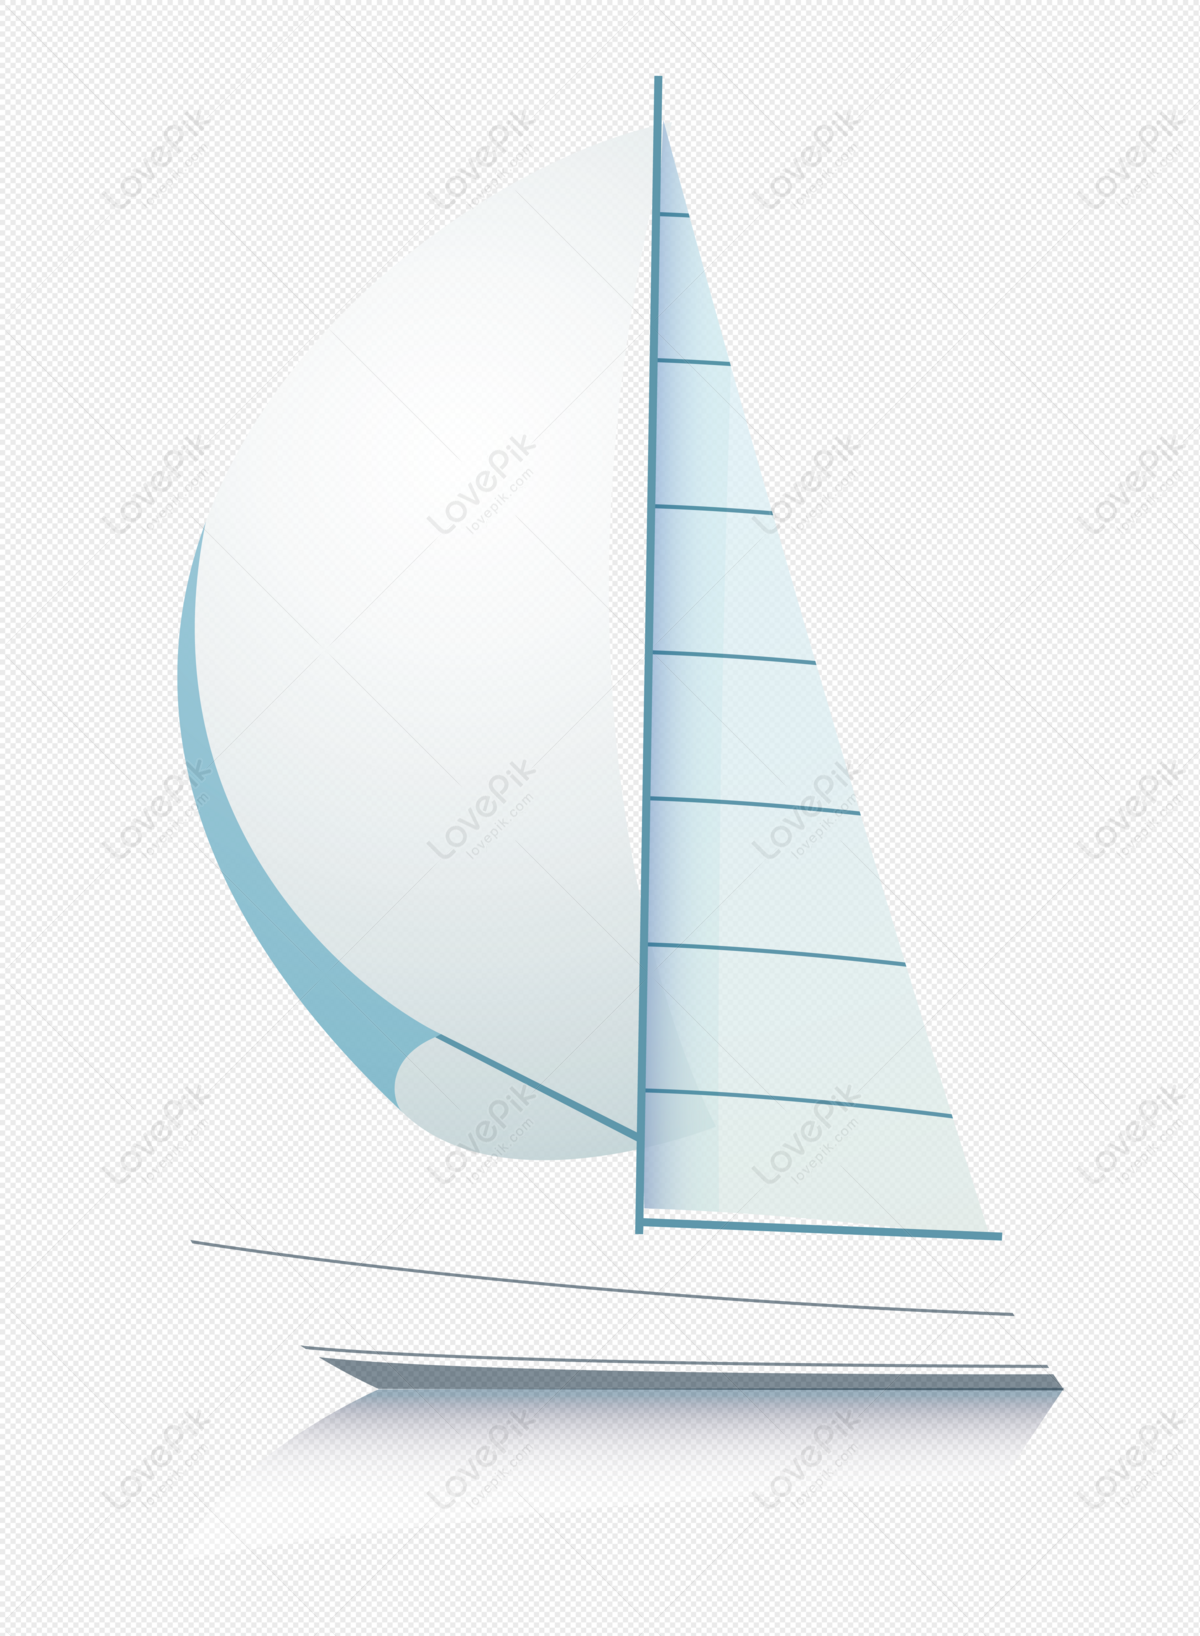 Sailboat, sail sailing, light white, boat sail png image free download